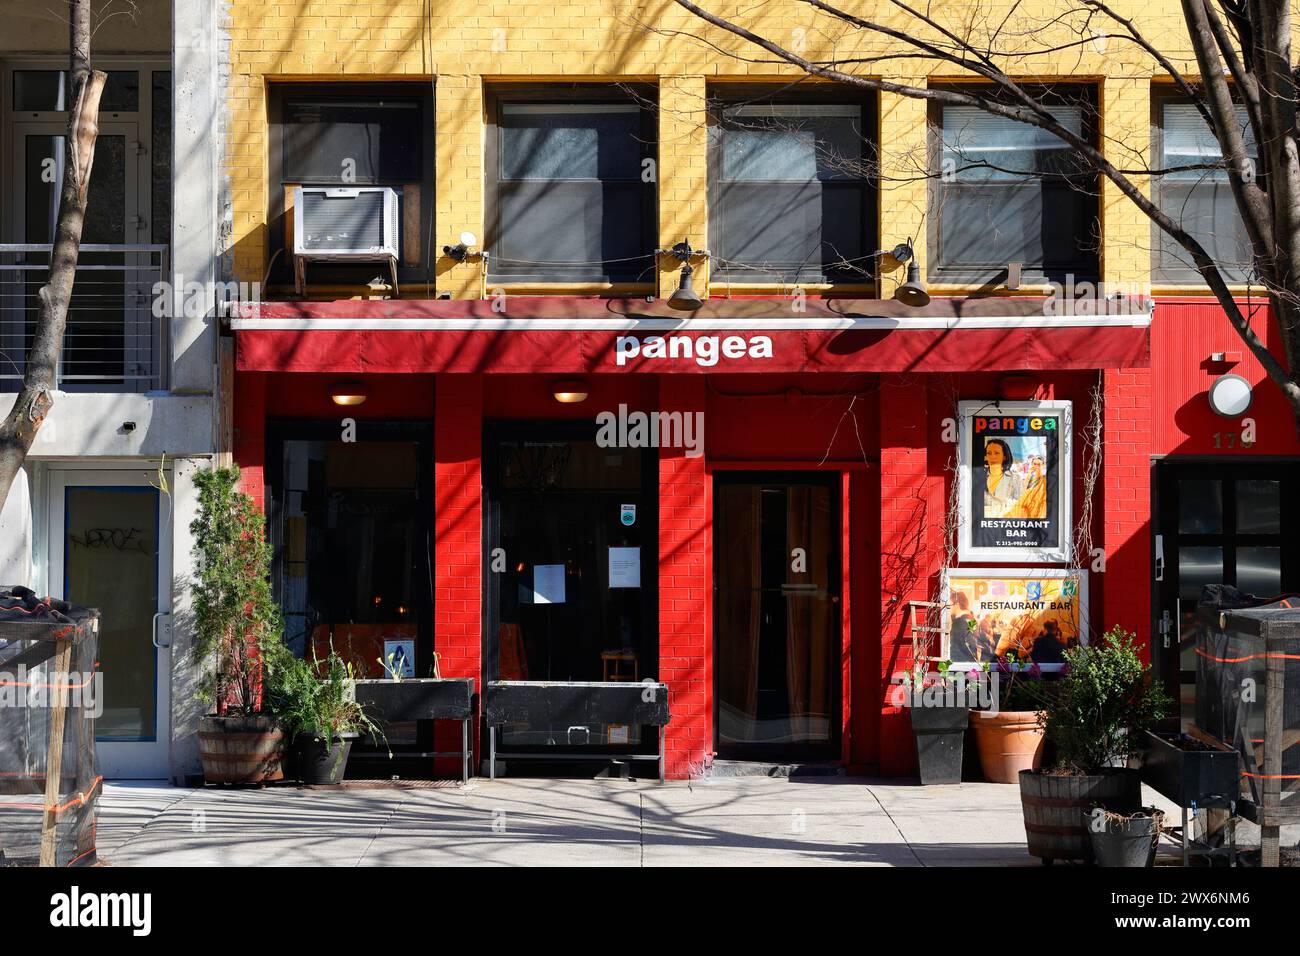 Pangea, 178 2nd Ave, New York, NYC, Ladenfront eines italienischen Restaurants in Manhattans East Village Nachbarschaft. Stockfoto